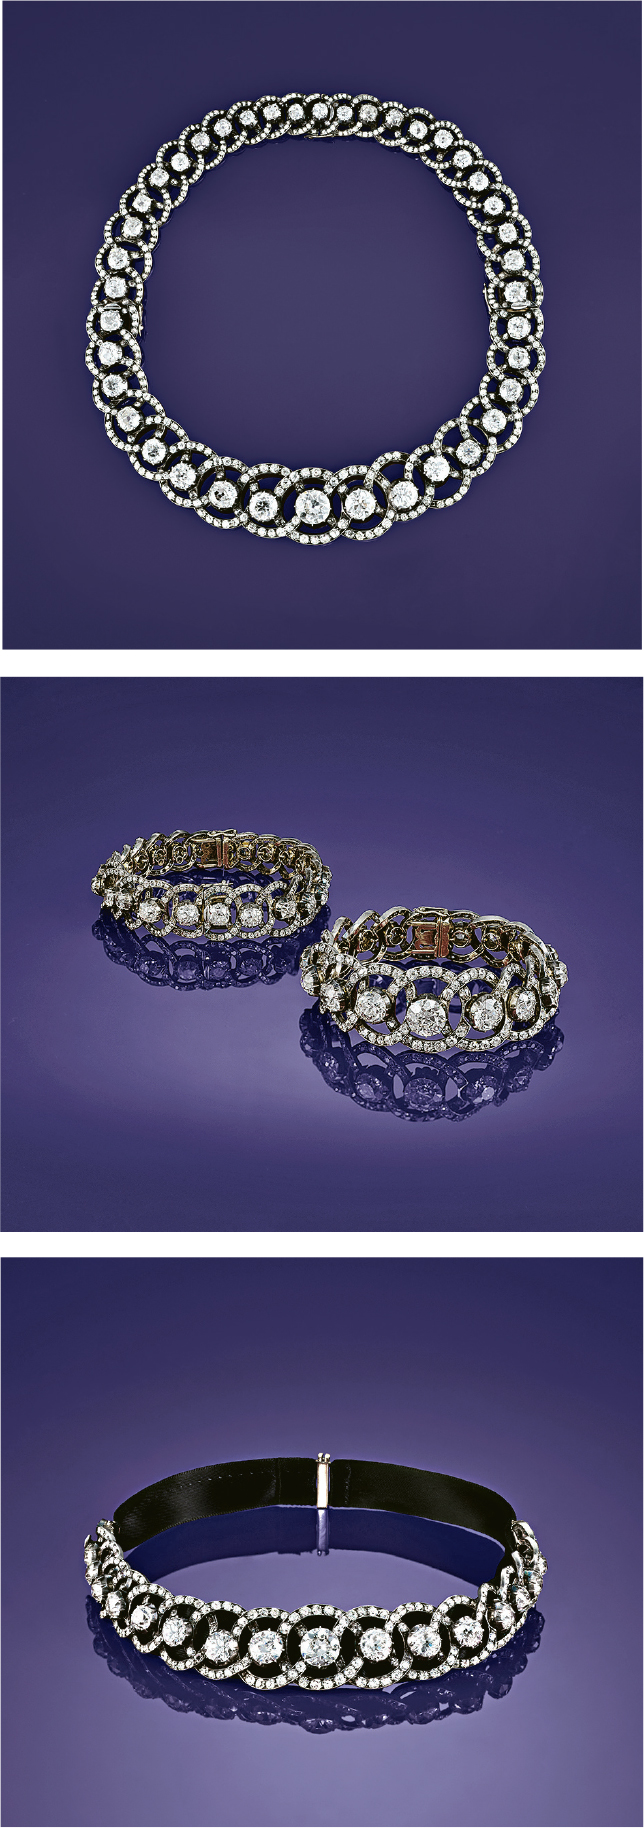 多種戴法--藏家喜歡可轉換佩戴的珠寶，圖中的頸鏈、短頸鏈和一對手鏈，其實是同一頂鑽石冠冕變化而成，當冠冕上的兩組鑽石鏈從支架上拆下來，便可轉換成不同的戴法。（展覽提供）